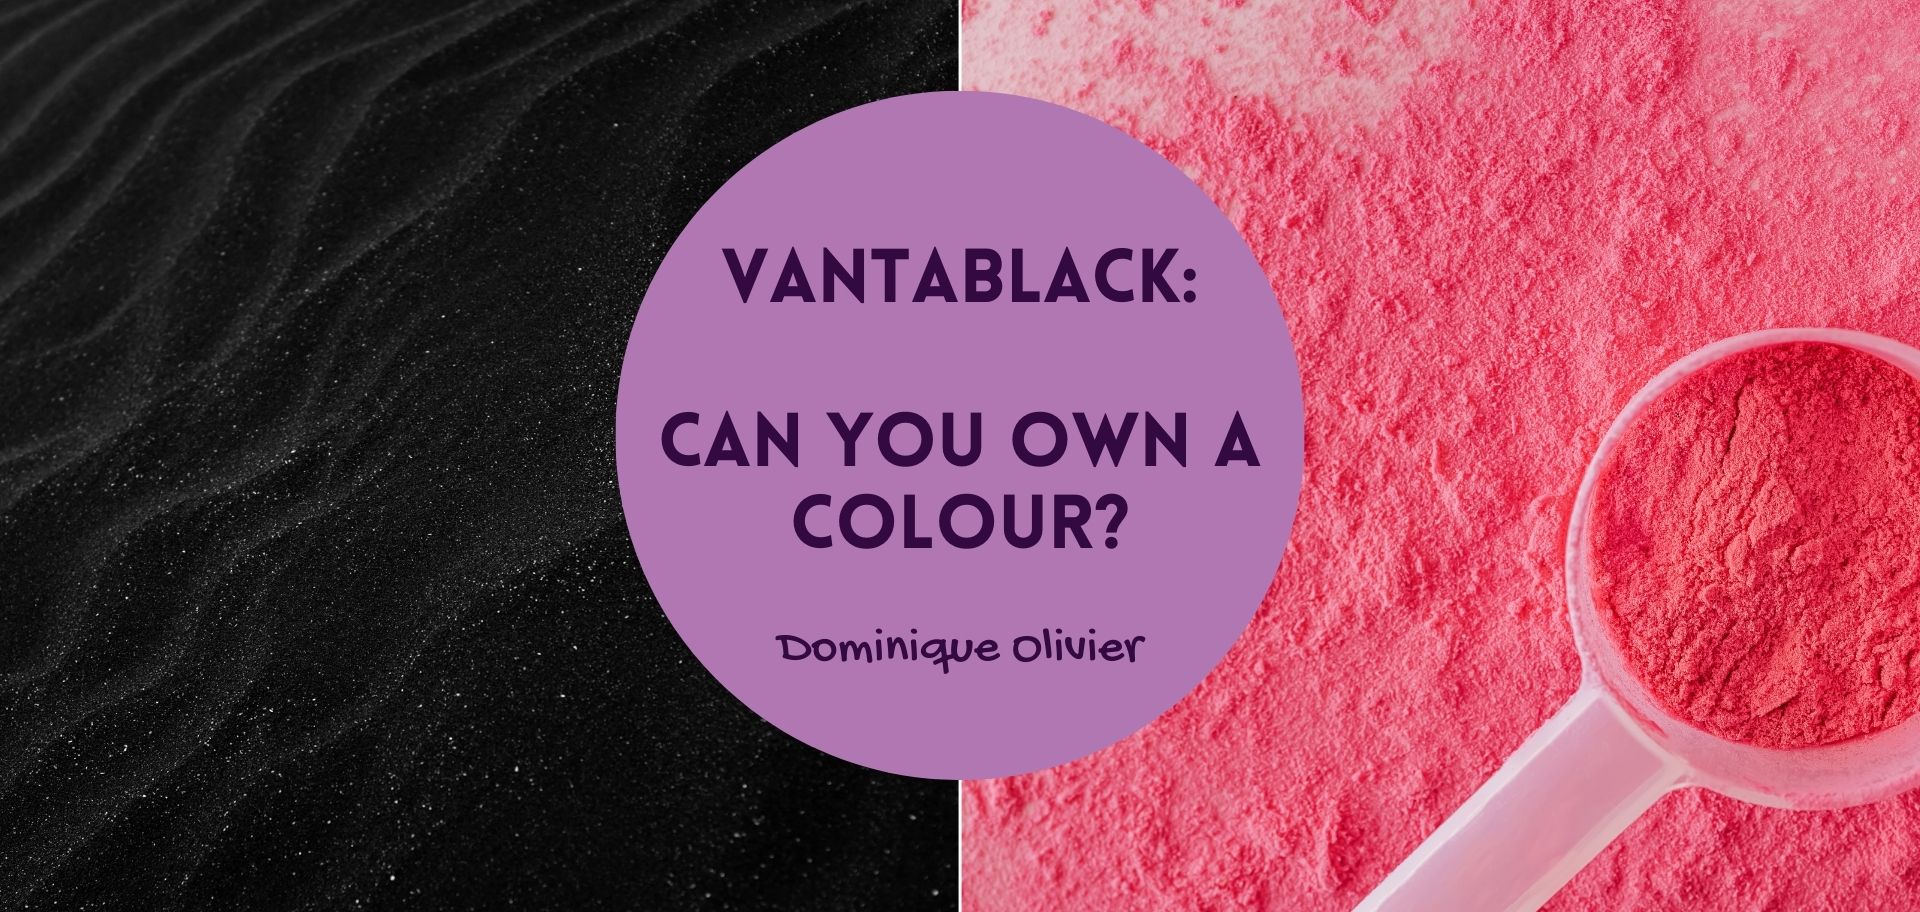 Vantablack: can you own a colour?